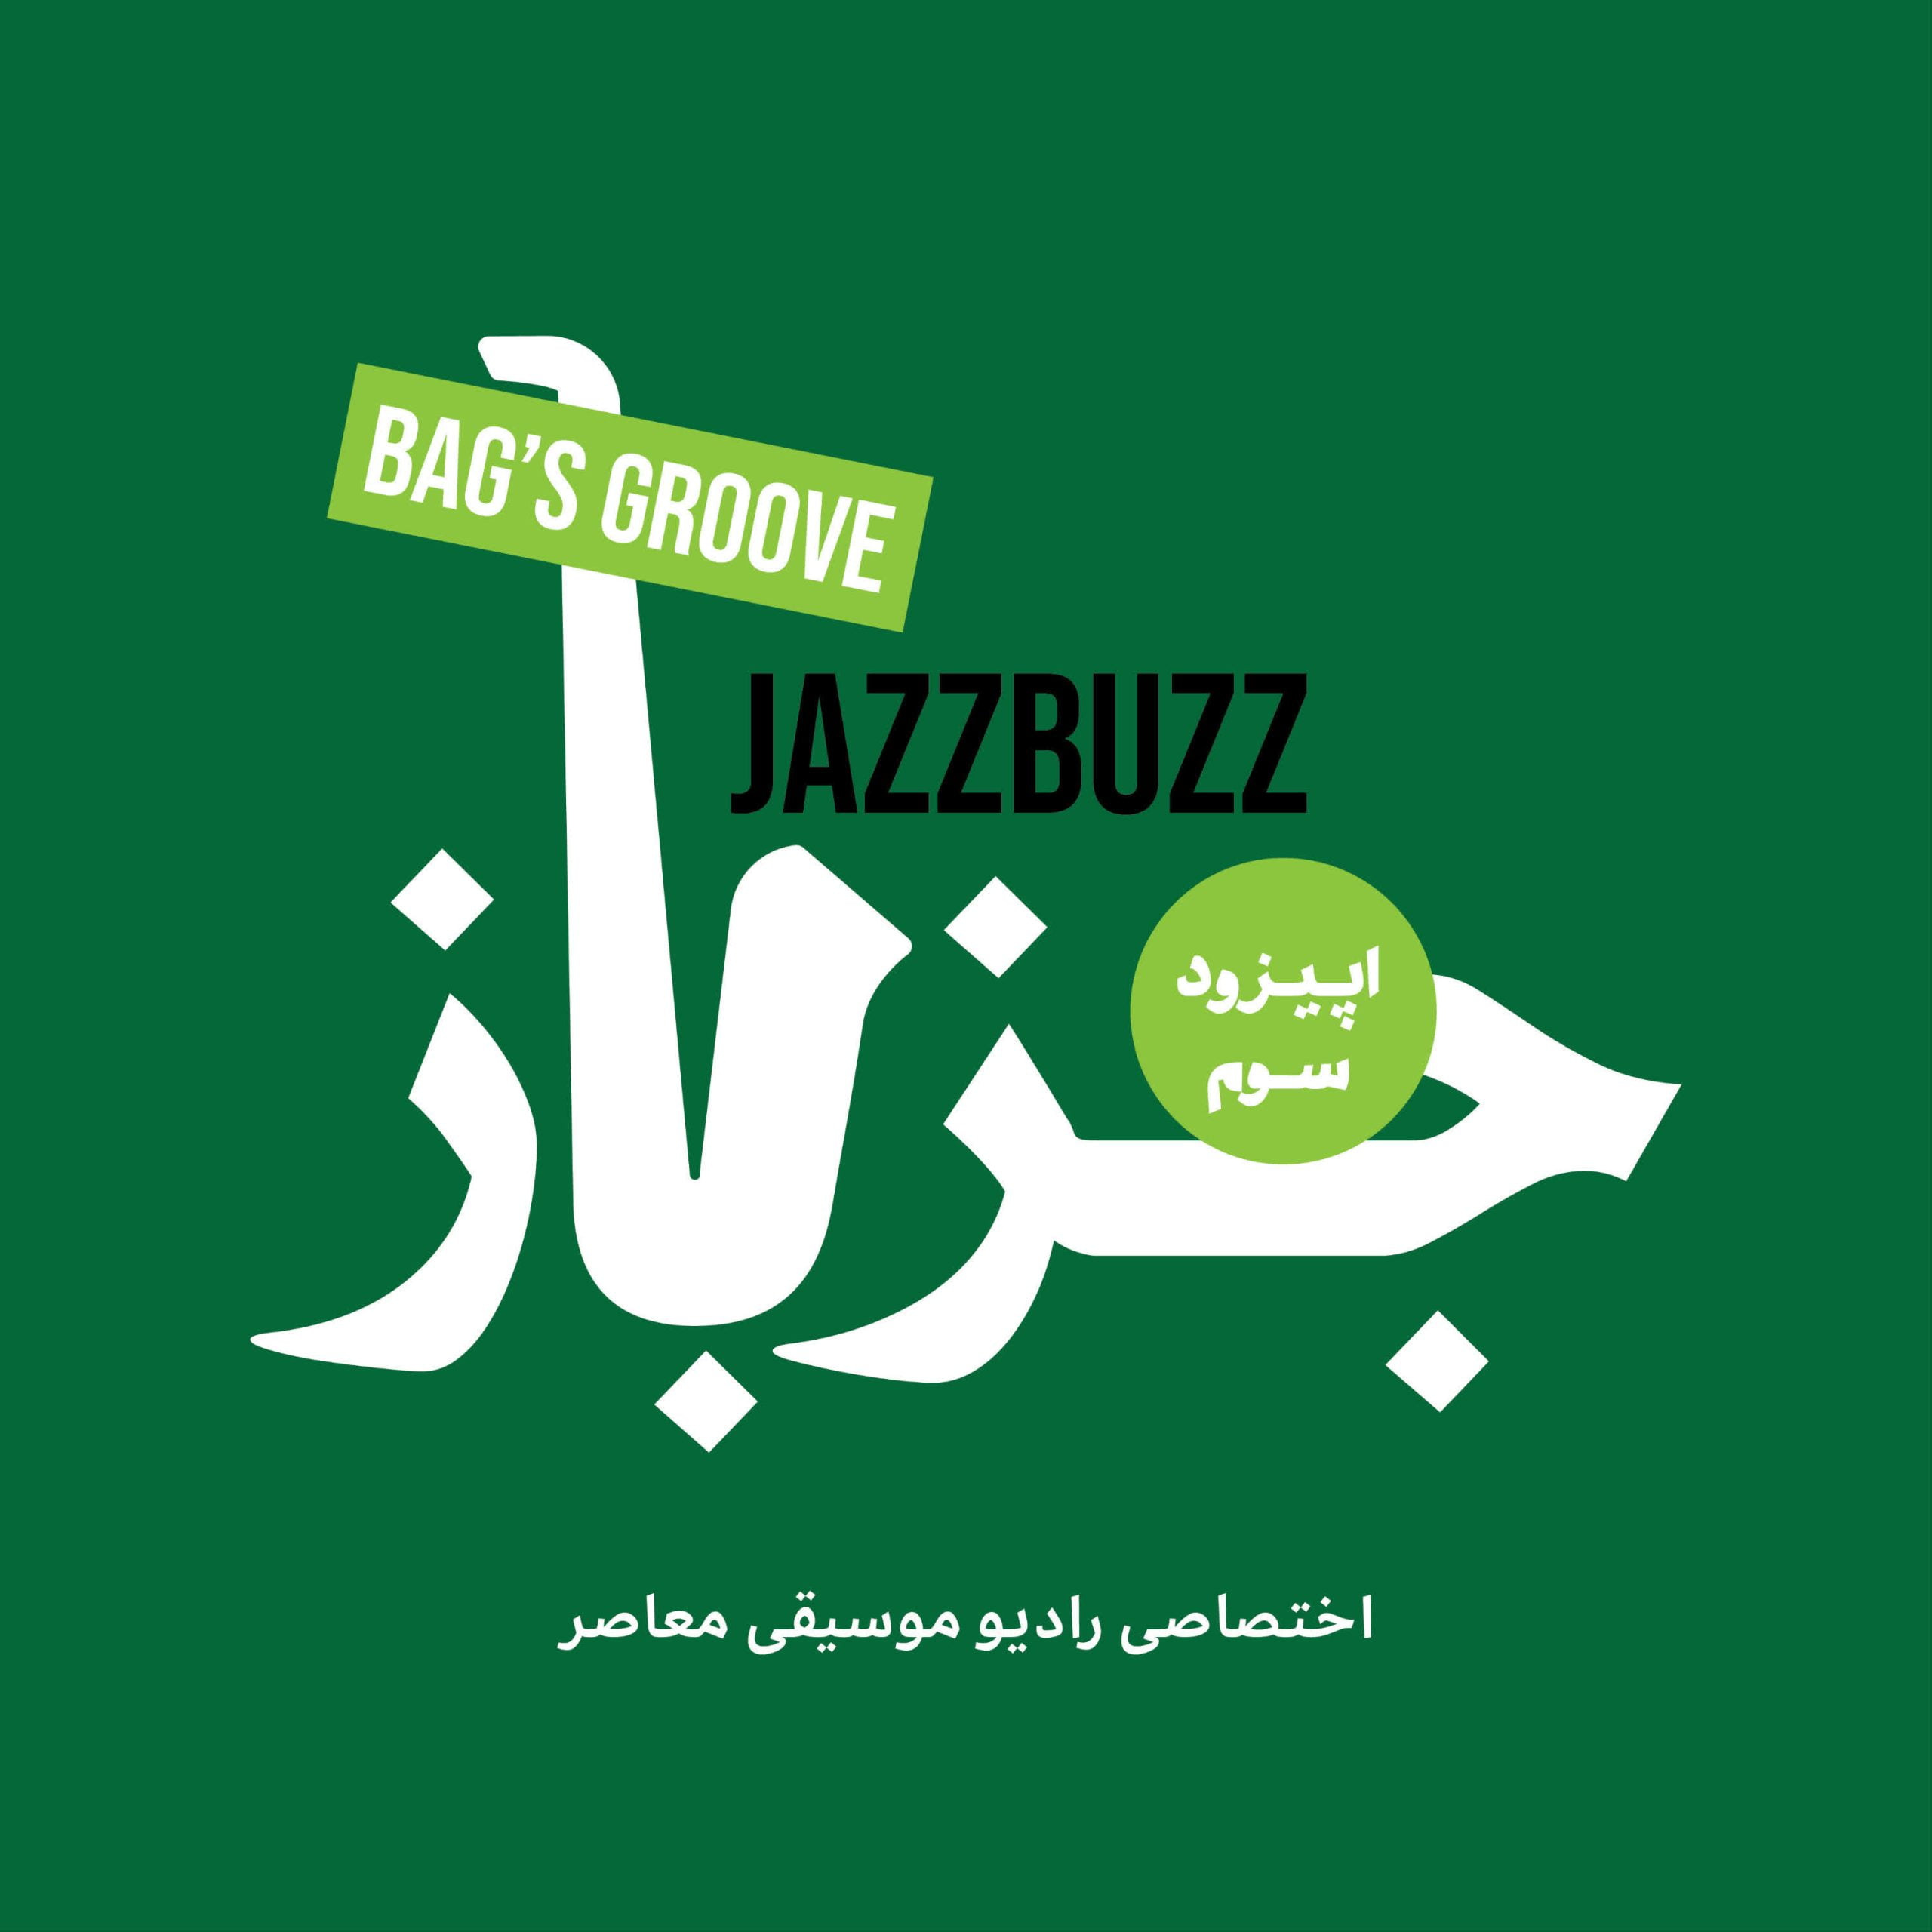 JazzBuzz 03: Bags’ Groove